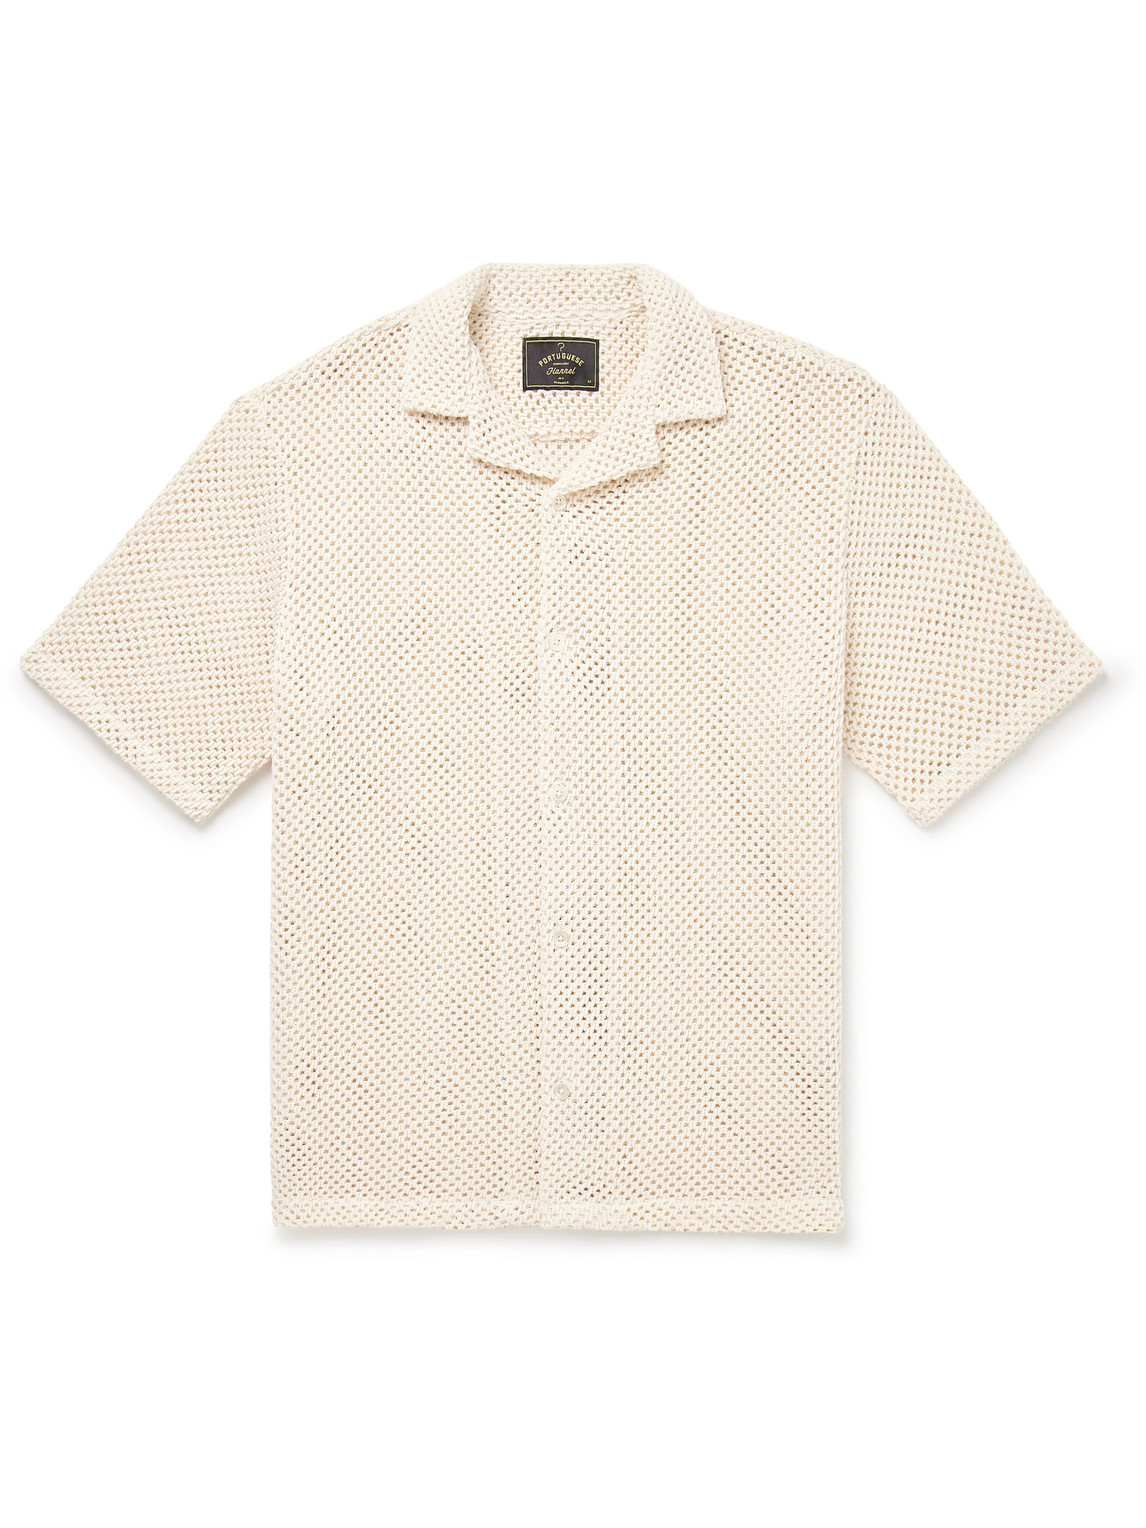 Camp-Collar Crocheted Cotton-Blend Shirt